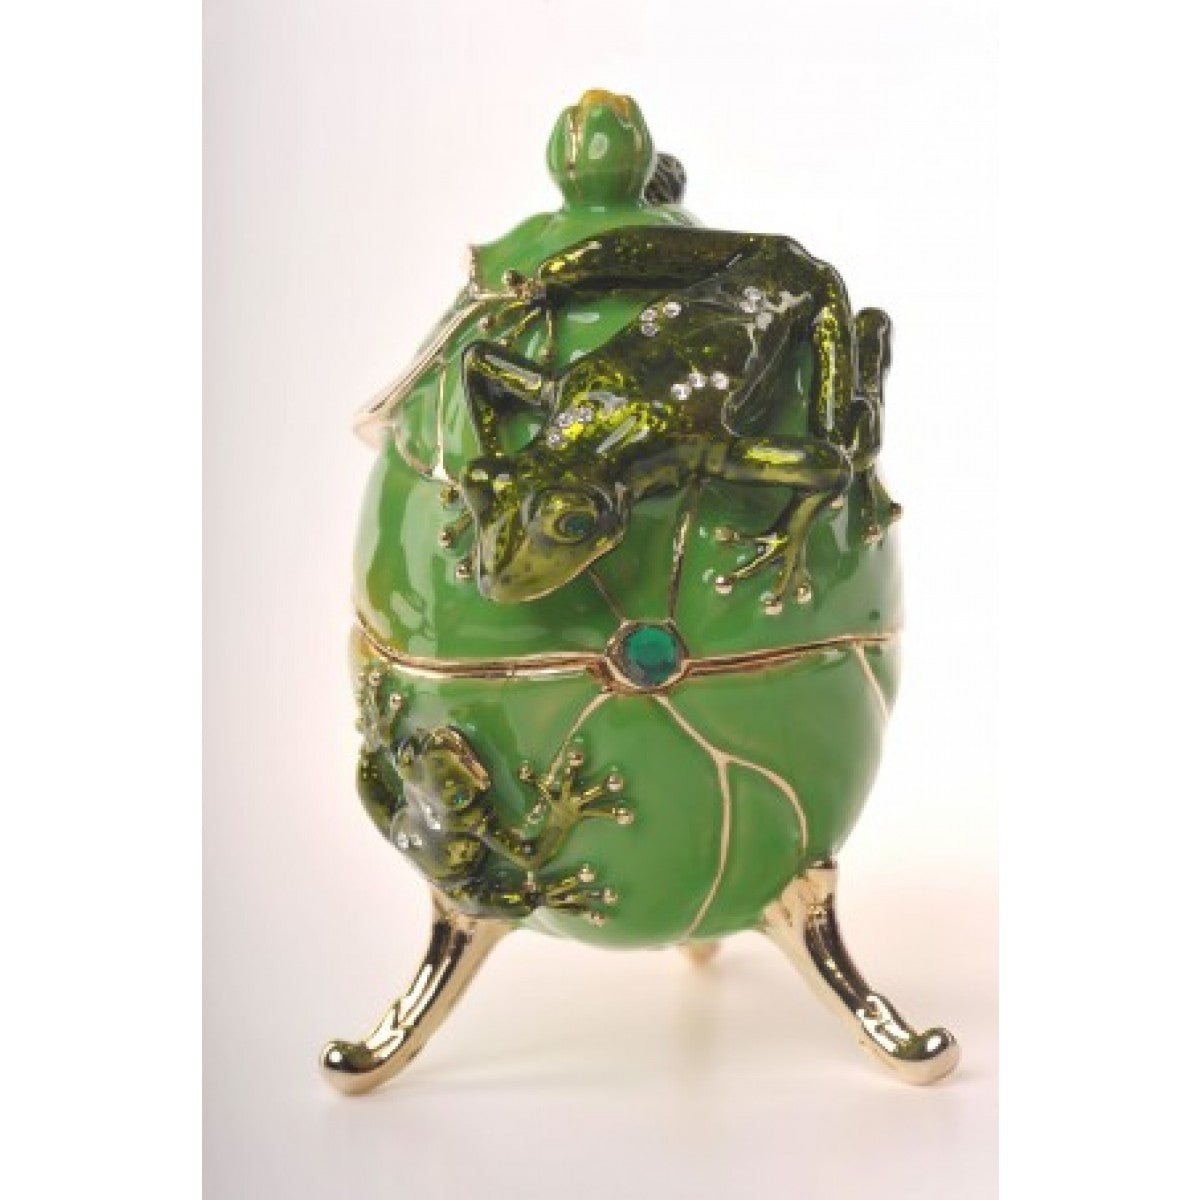 Frogs Faberge Egg by Keren Kopal